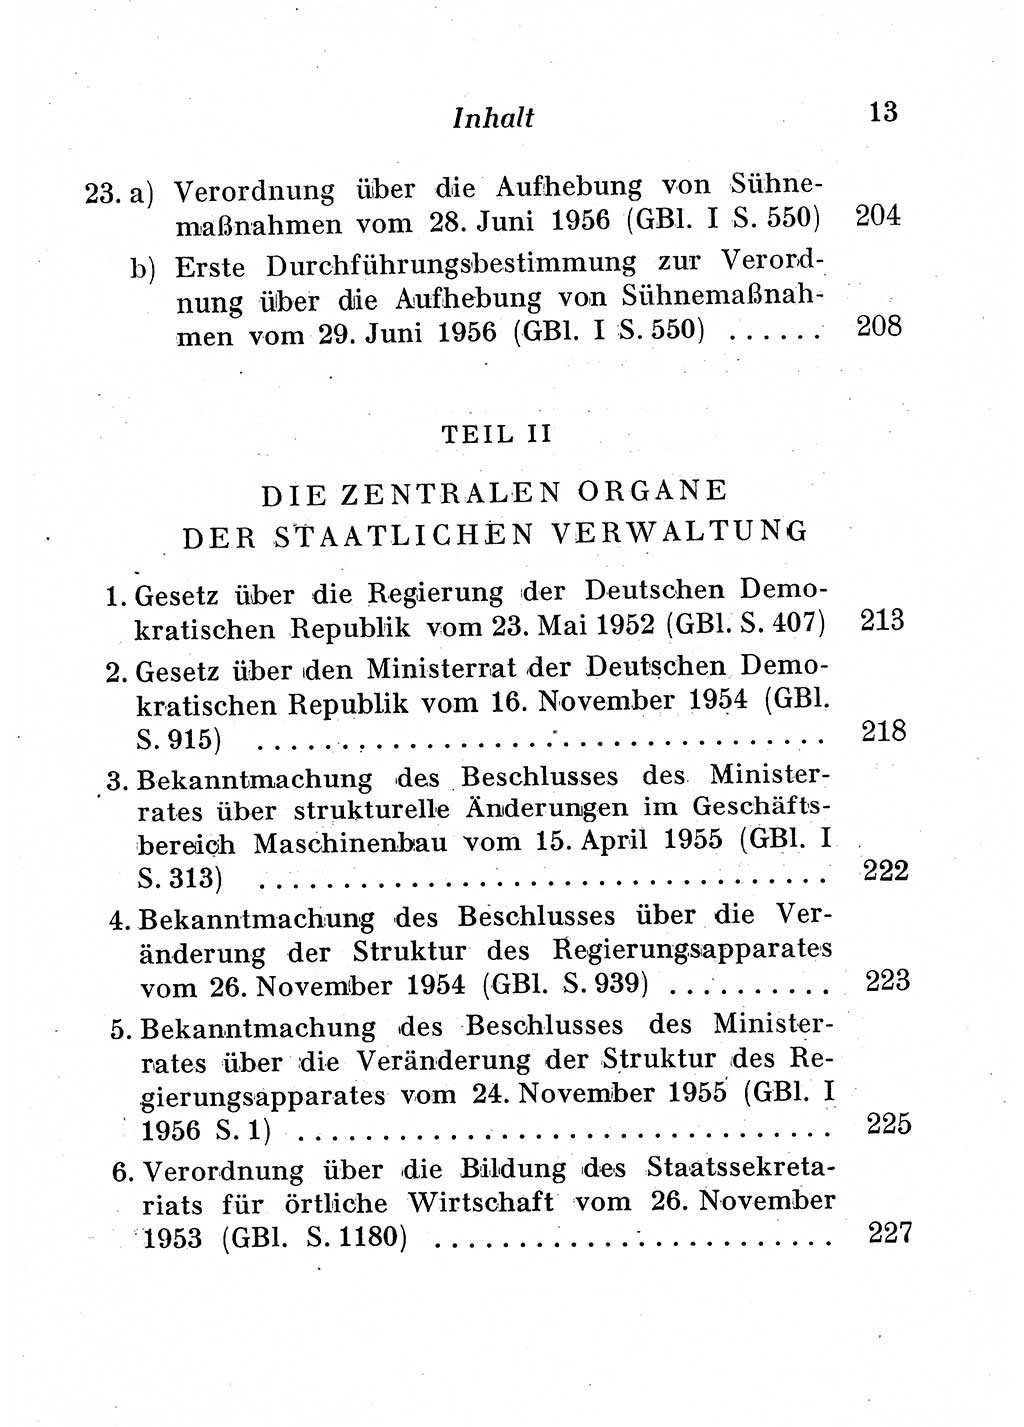 Staats- und verwaltungsrechtliche Gesetze der Deutschen Demokratischen Republik (DDR) 1958, Seite 13 (StVerwR Ges. DDR 1958, S. 13)